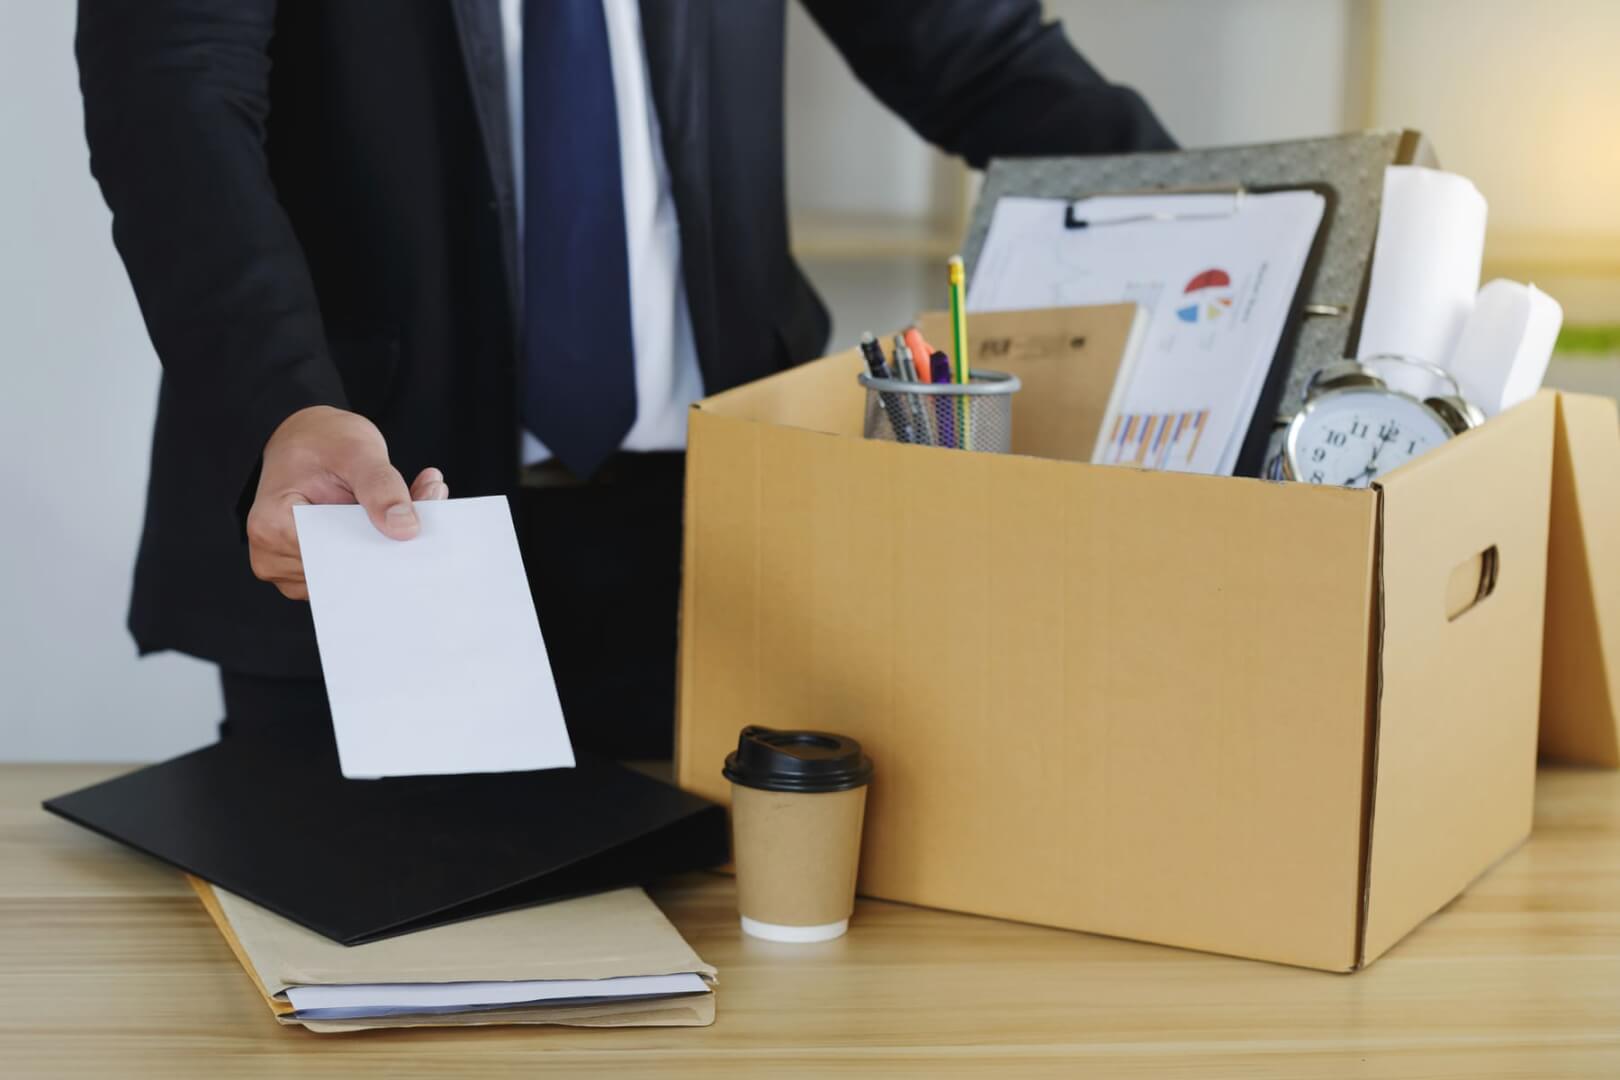 Una imagen de un empleado despedido mientras recoge sus cosas de la oficina en una caja.